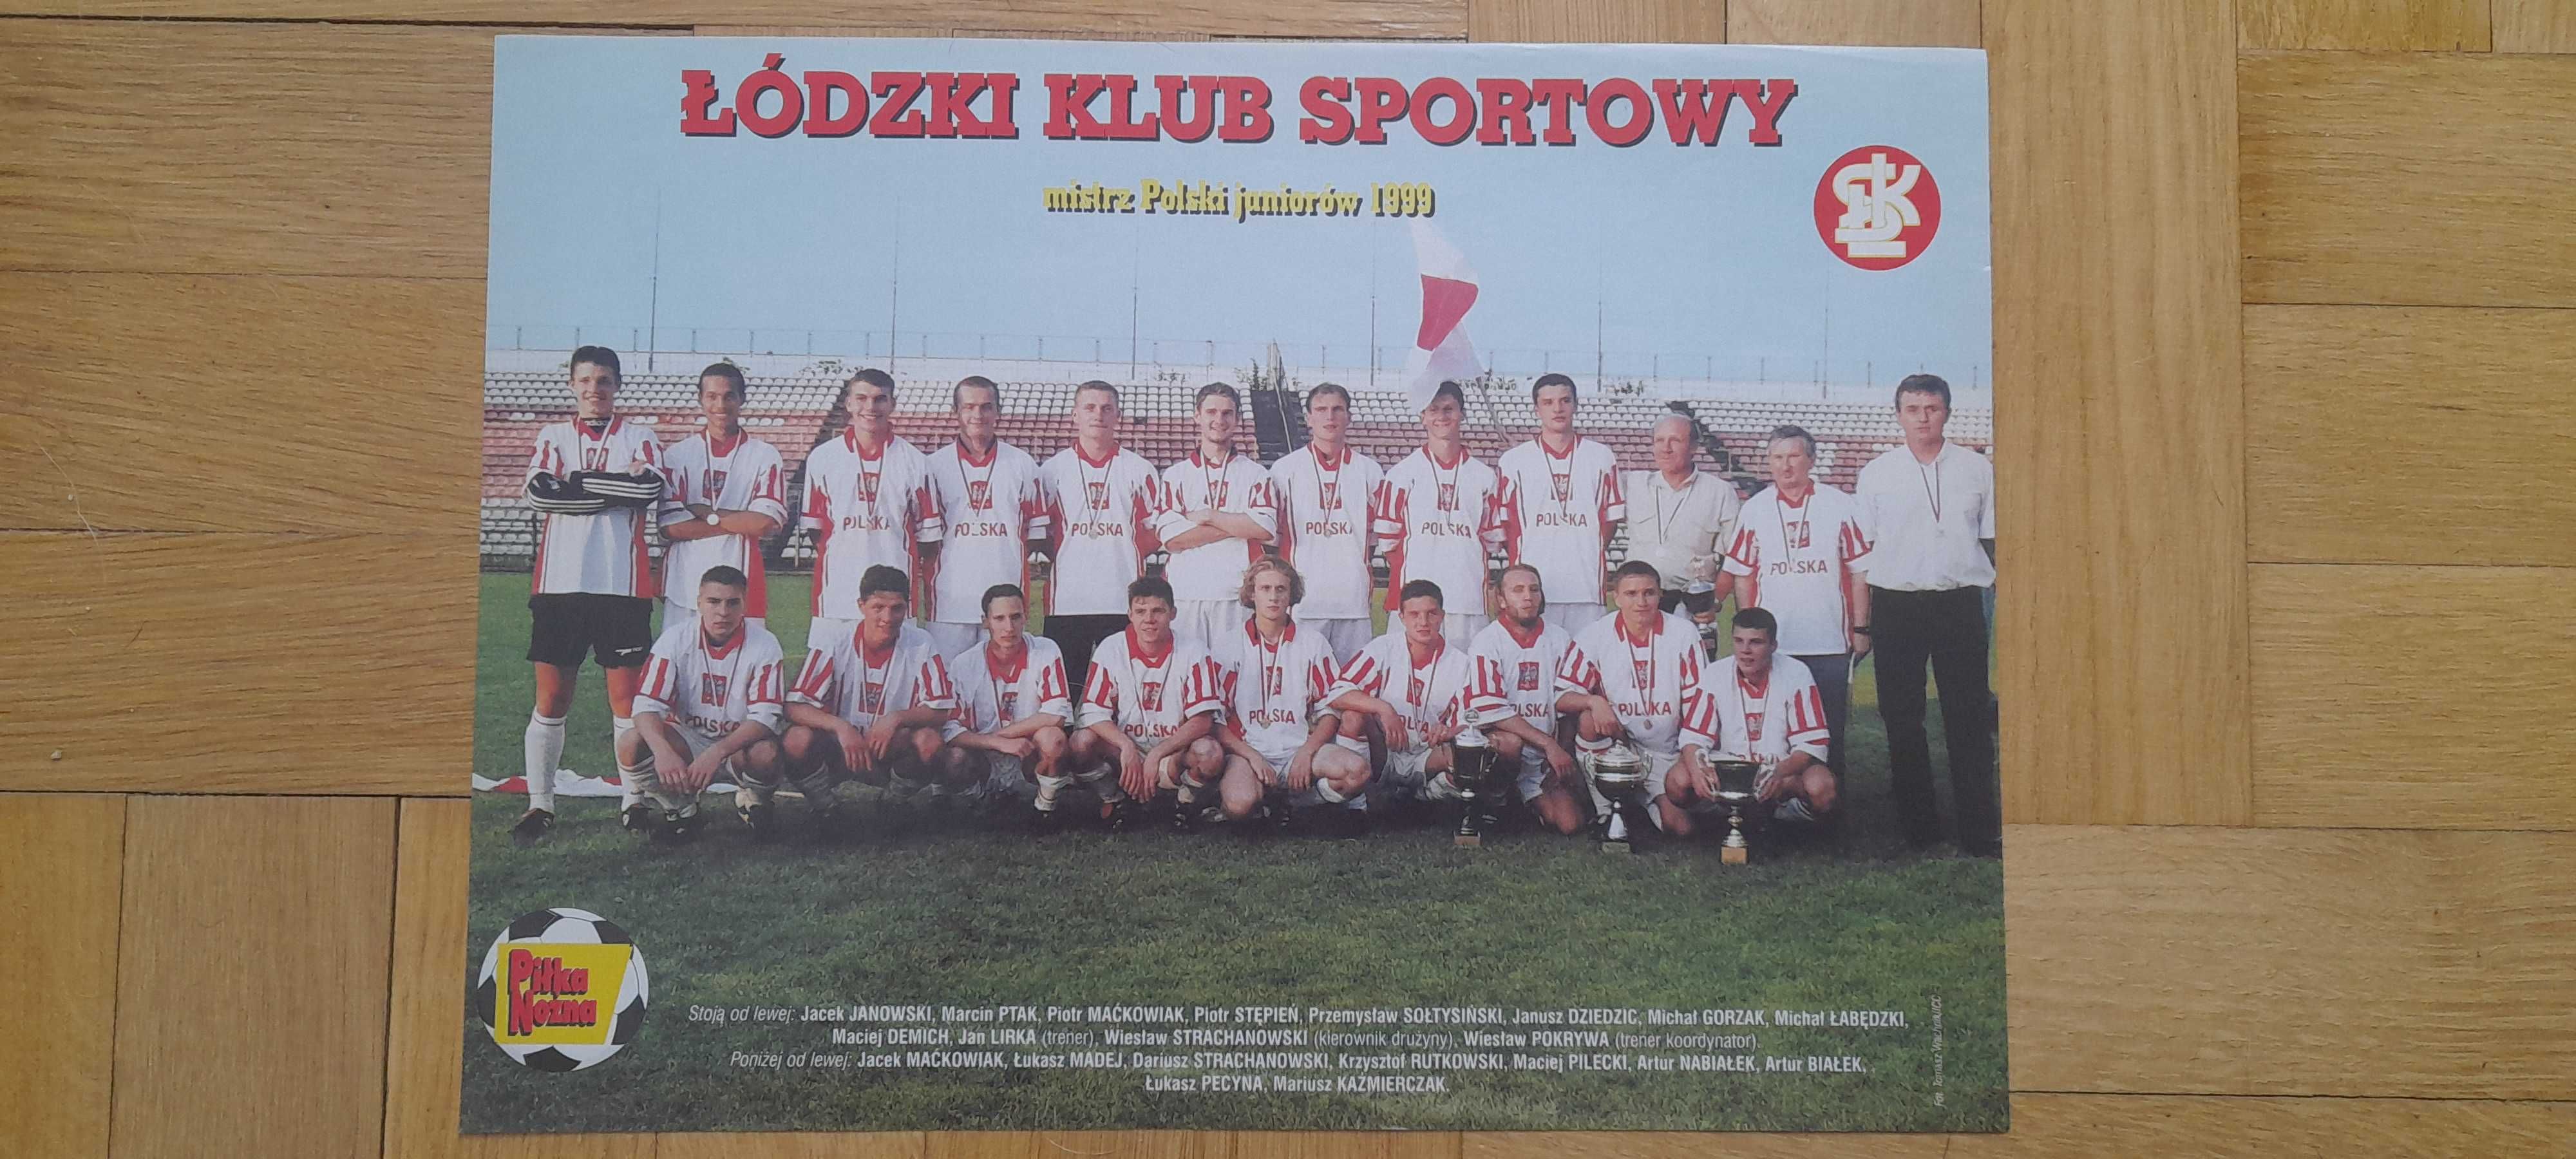 Łódzki Klub Sportowy mistrz Polski juniorów 1999  - plakat